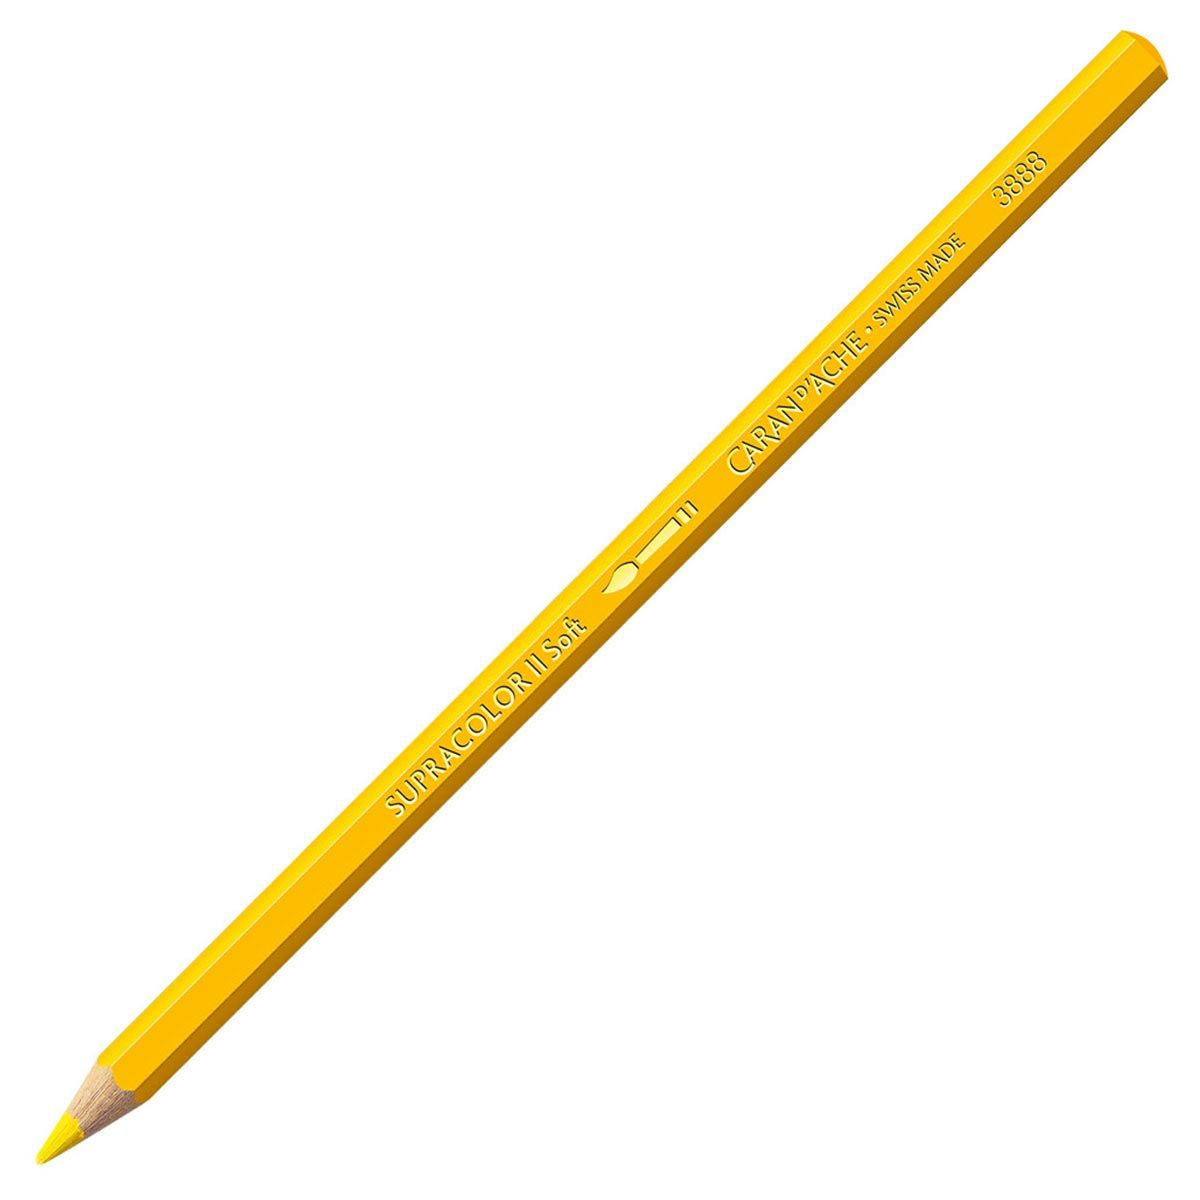 Caran d'Ache Supracolor ll Soft Aquarelle Pencil Yellow 010